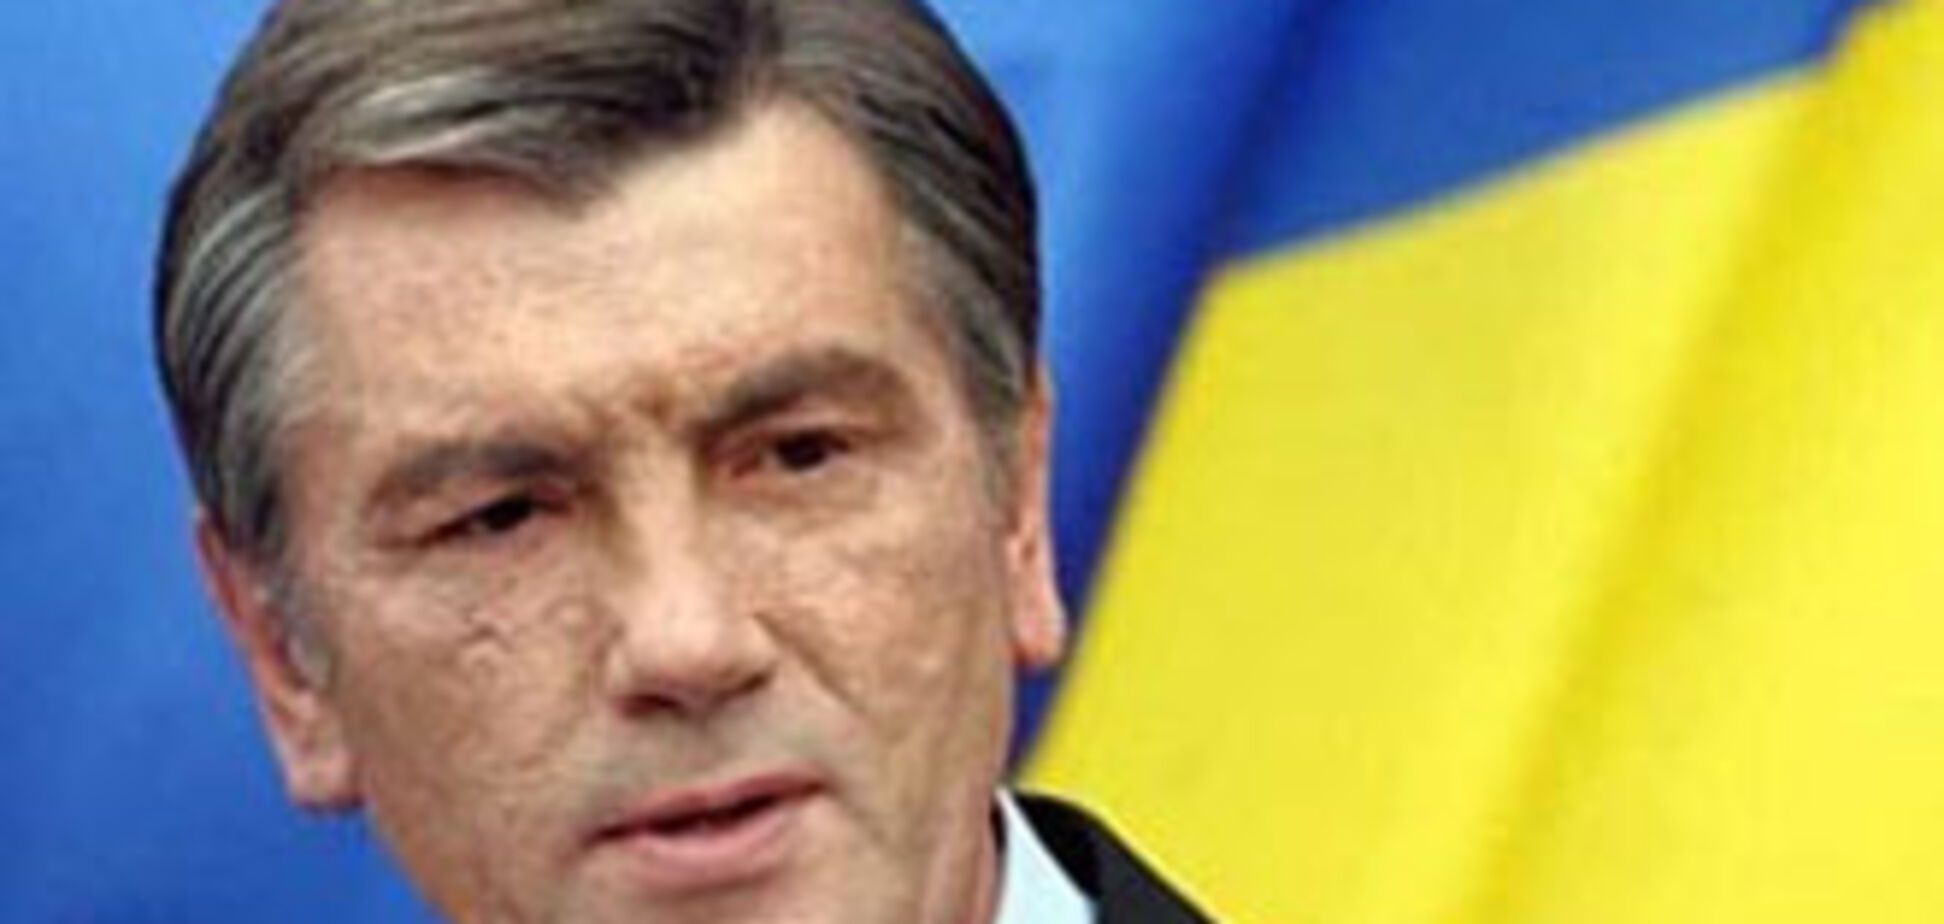 Задержанный в Германии киллер сидел за одним столом с Ющенко